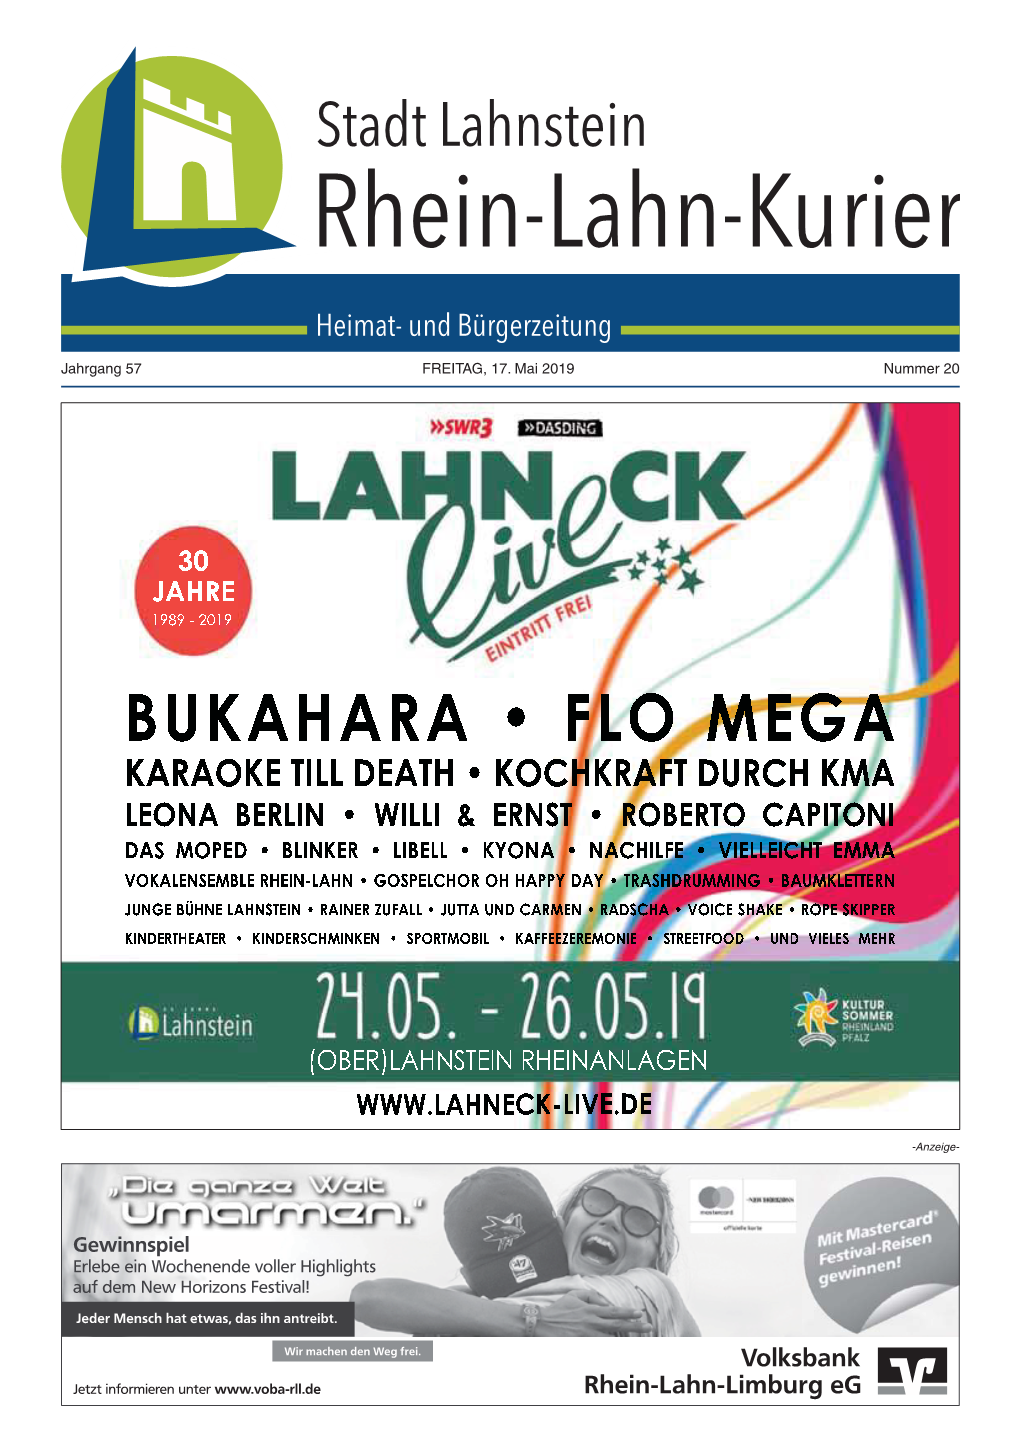 Stadt Lahnstein Rhein-Lahn-Kurier